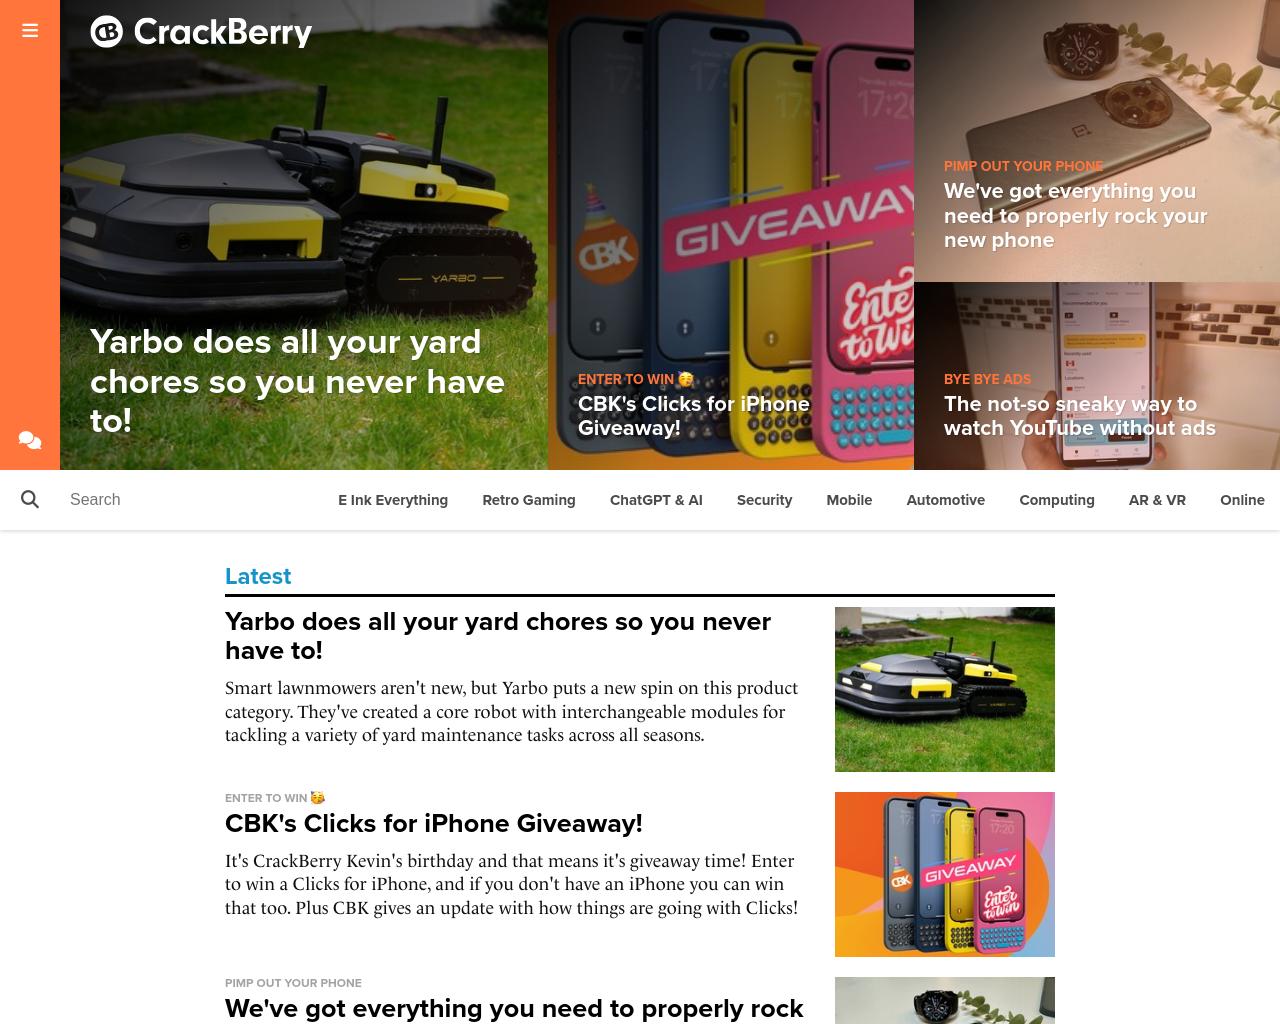 crackberry.com